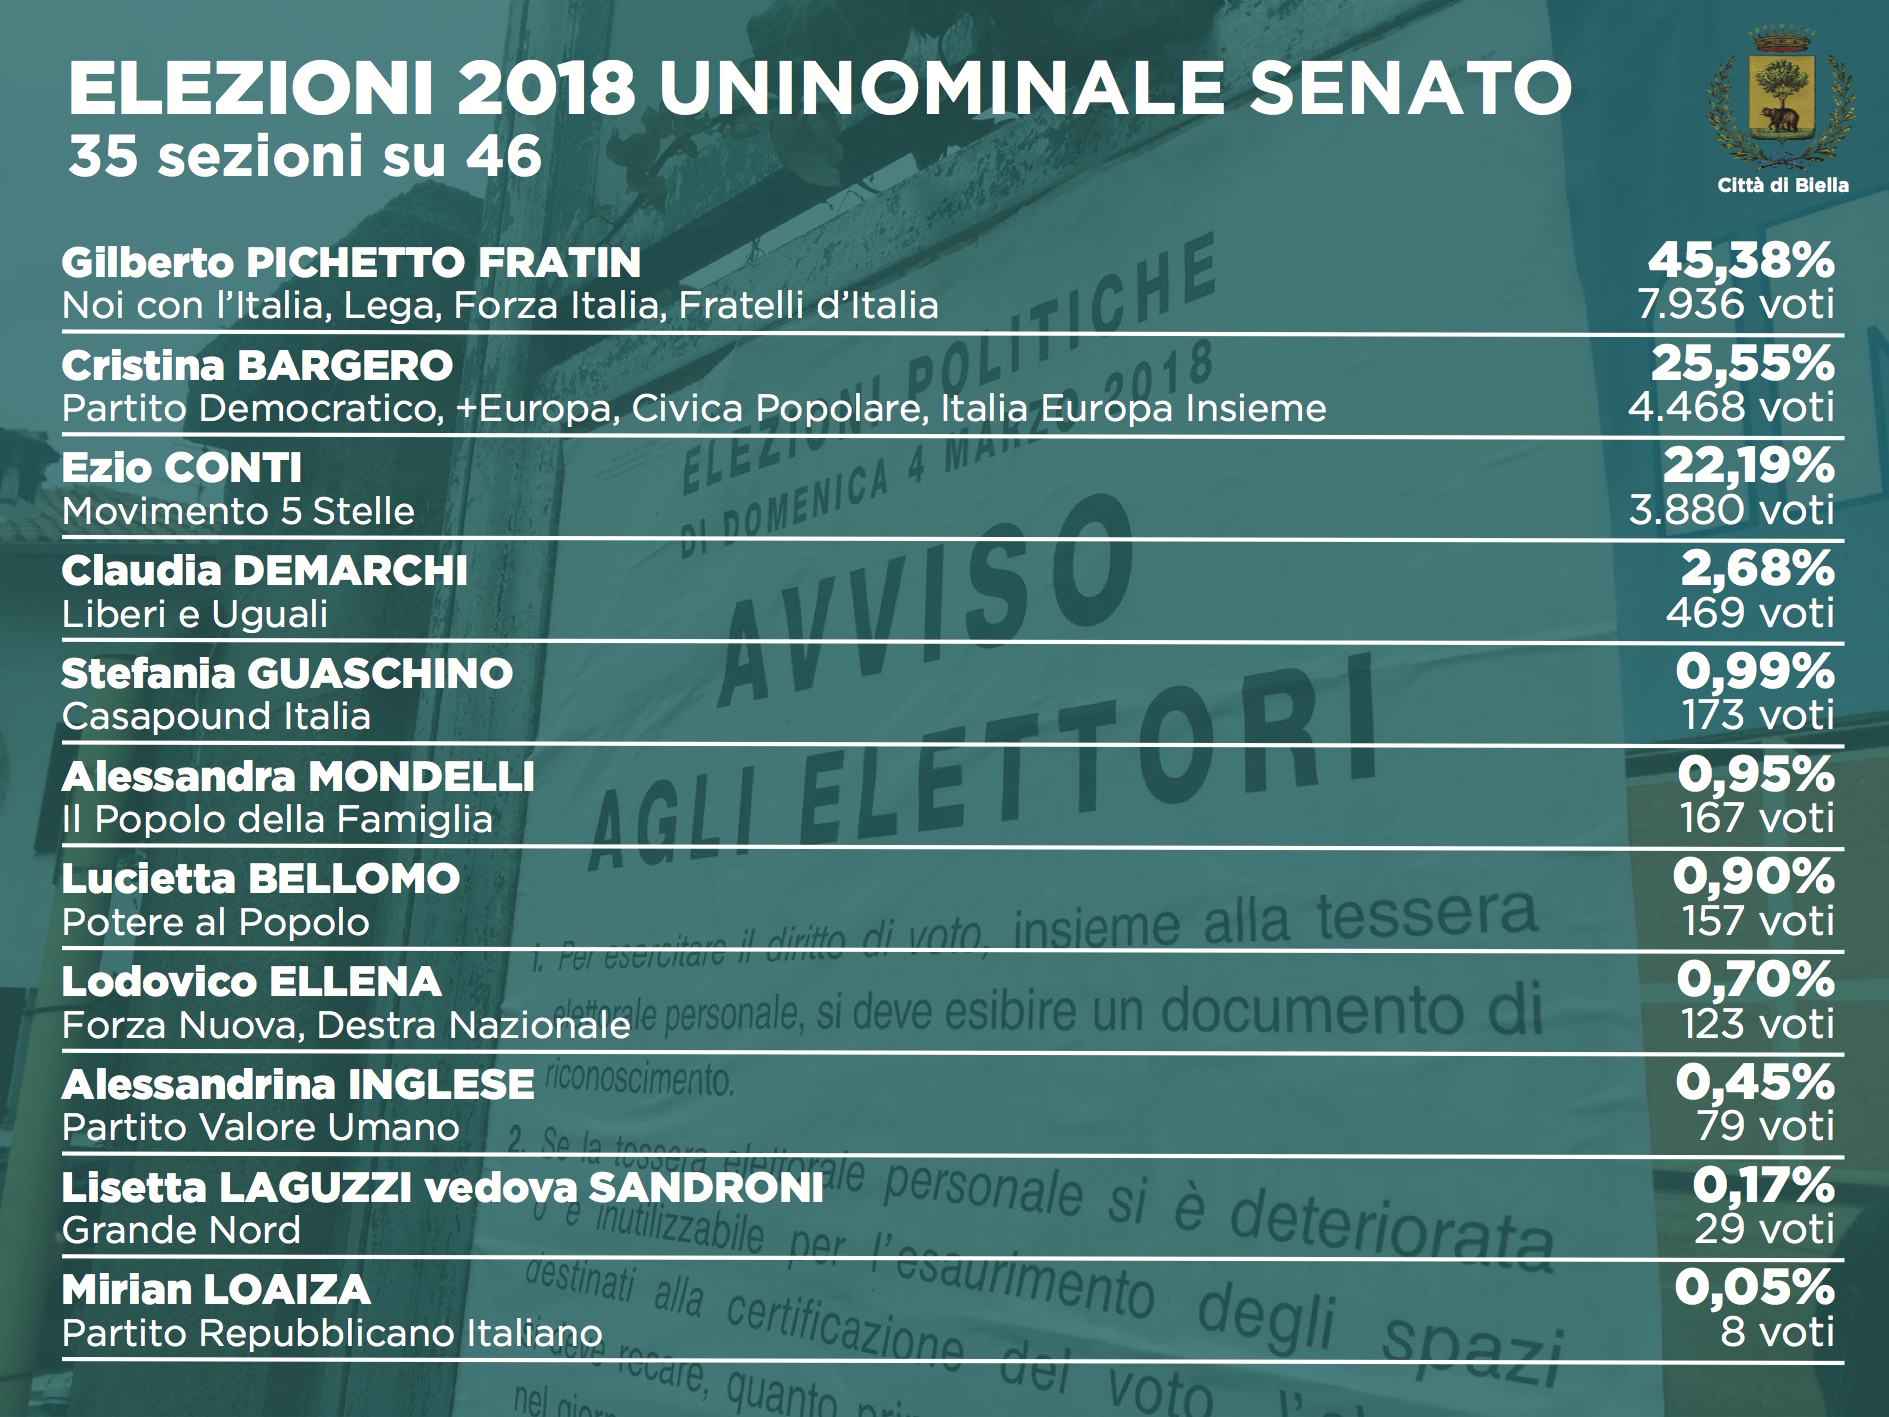 Elezioni 2018: i dati dell'uninominale al Senato (35 sezioni su 46)